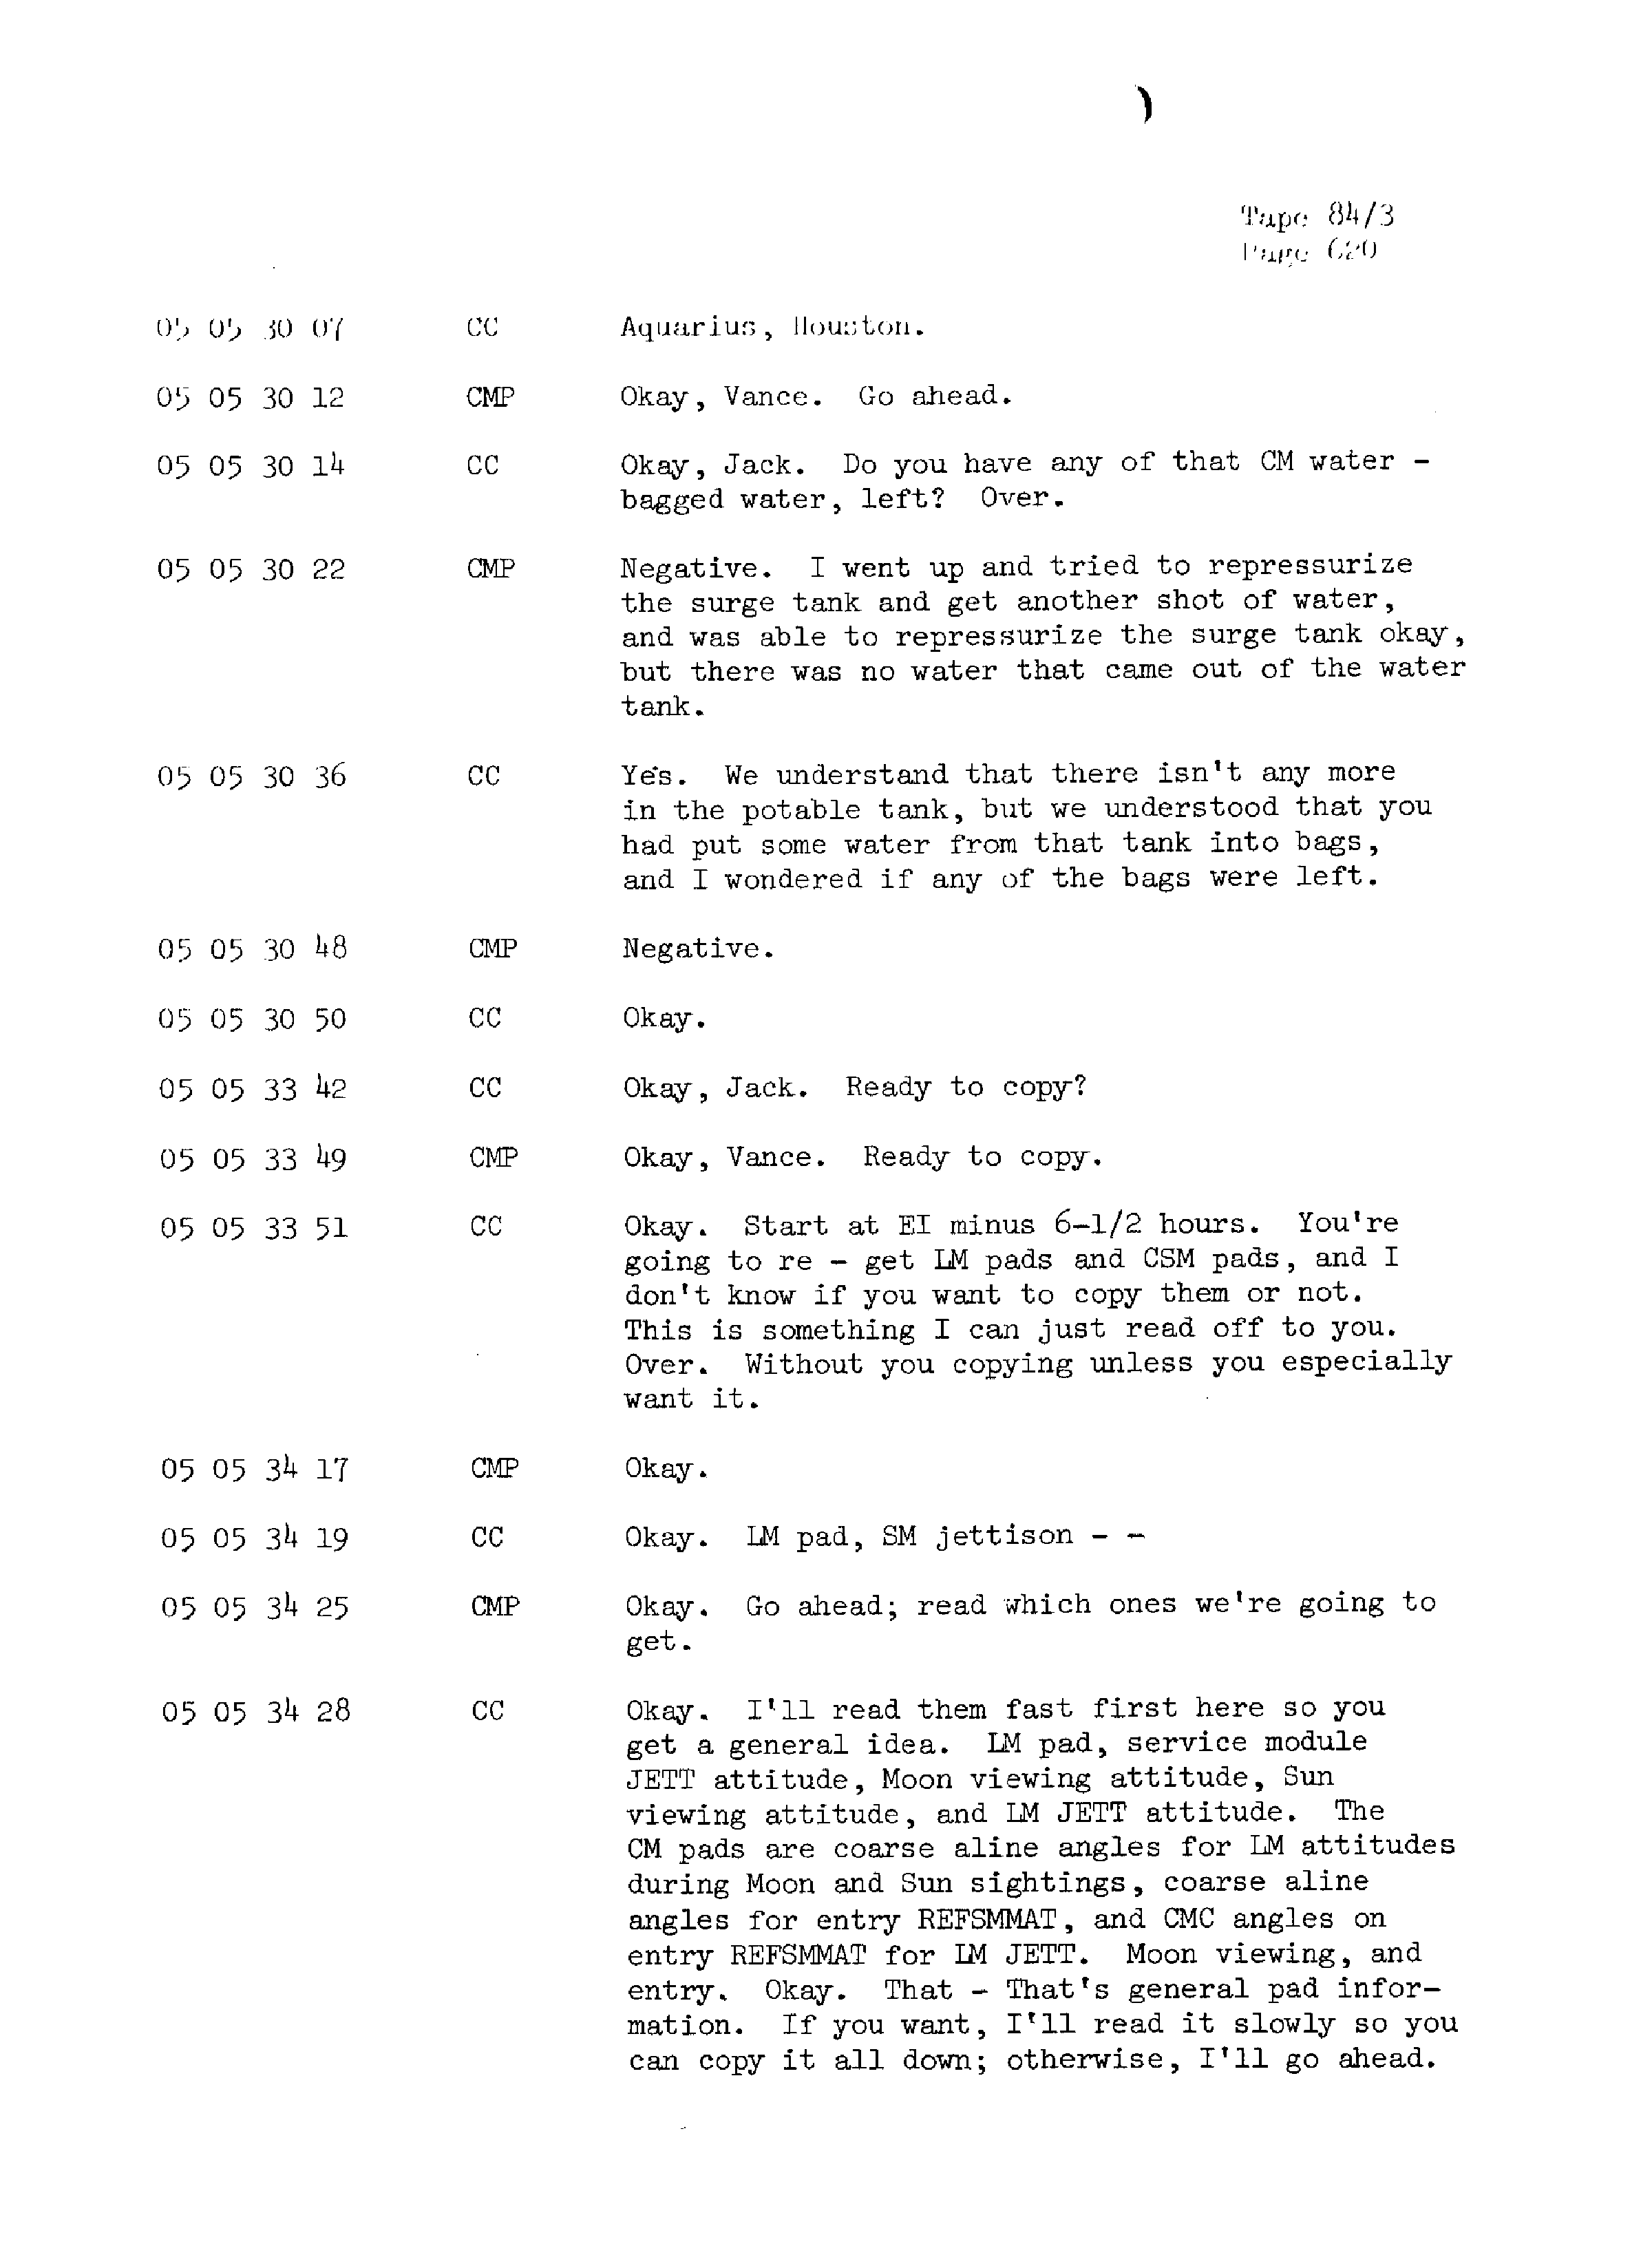 Page 627 of Apollo 13’s original transcript